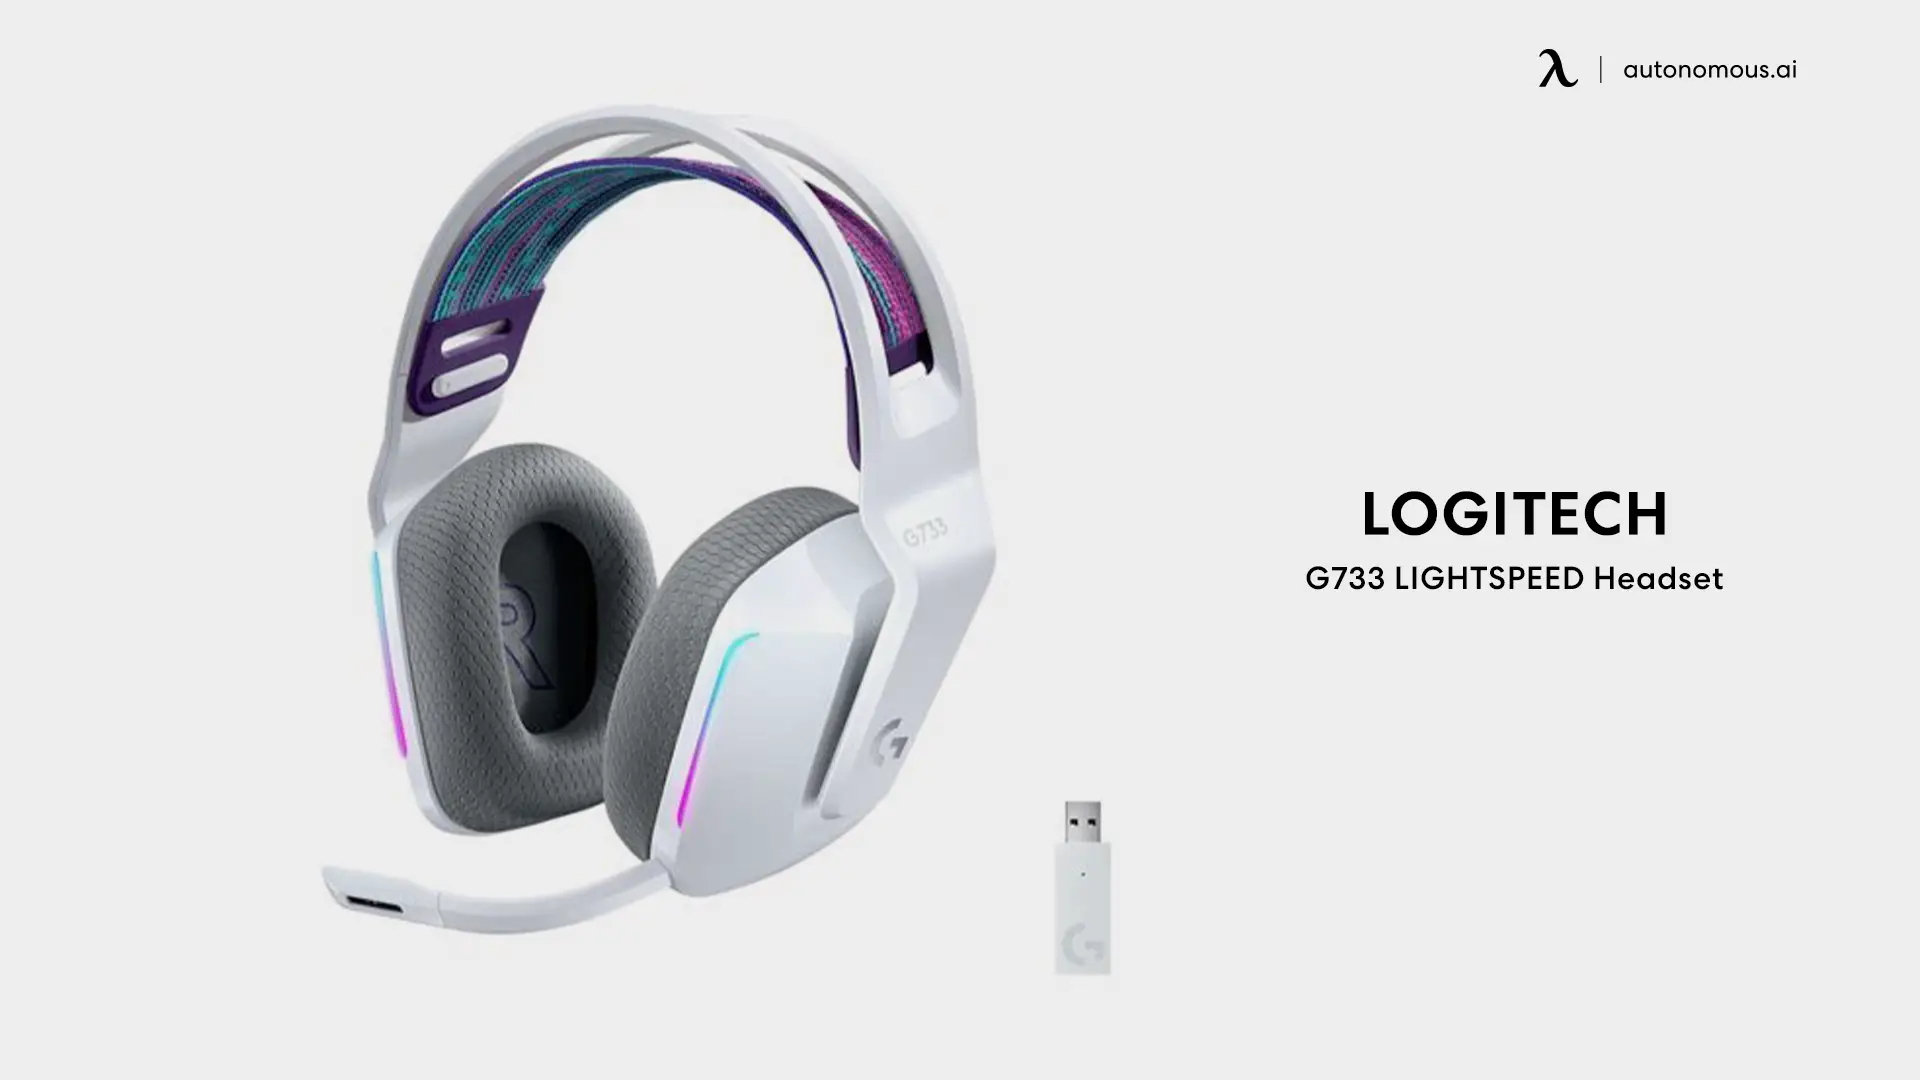 G733 LIGHTSPEED Headset from Logitech